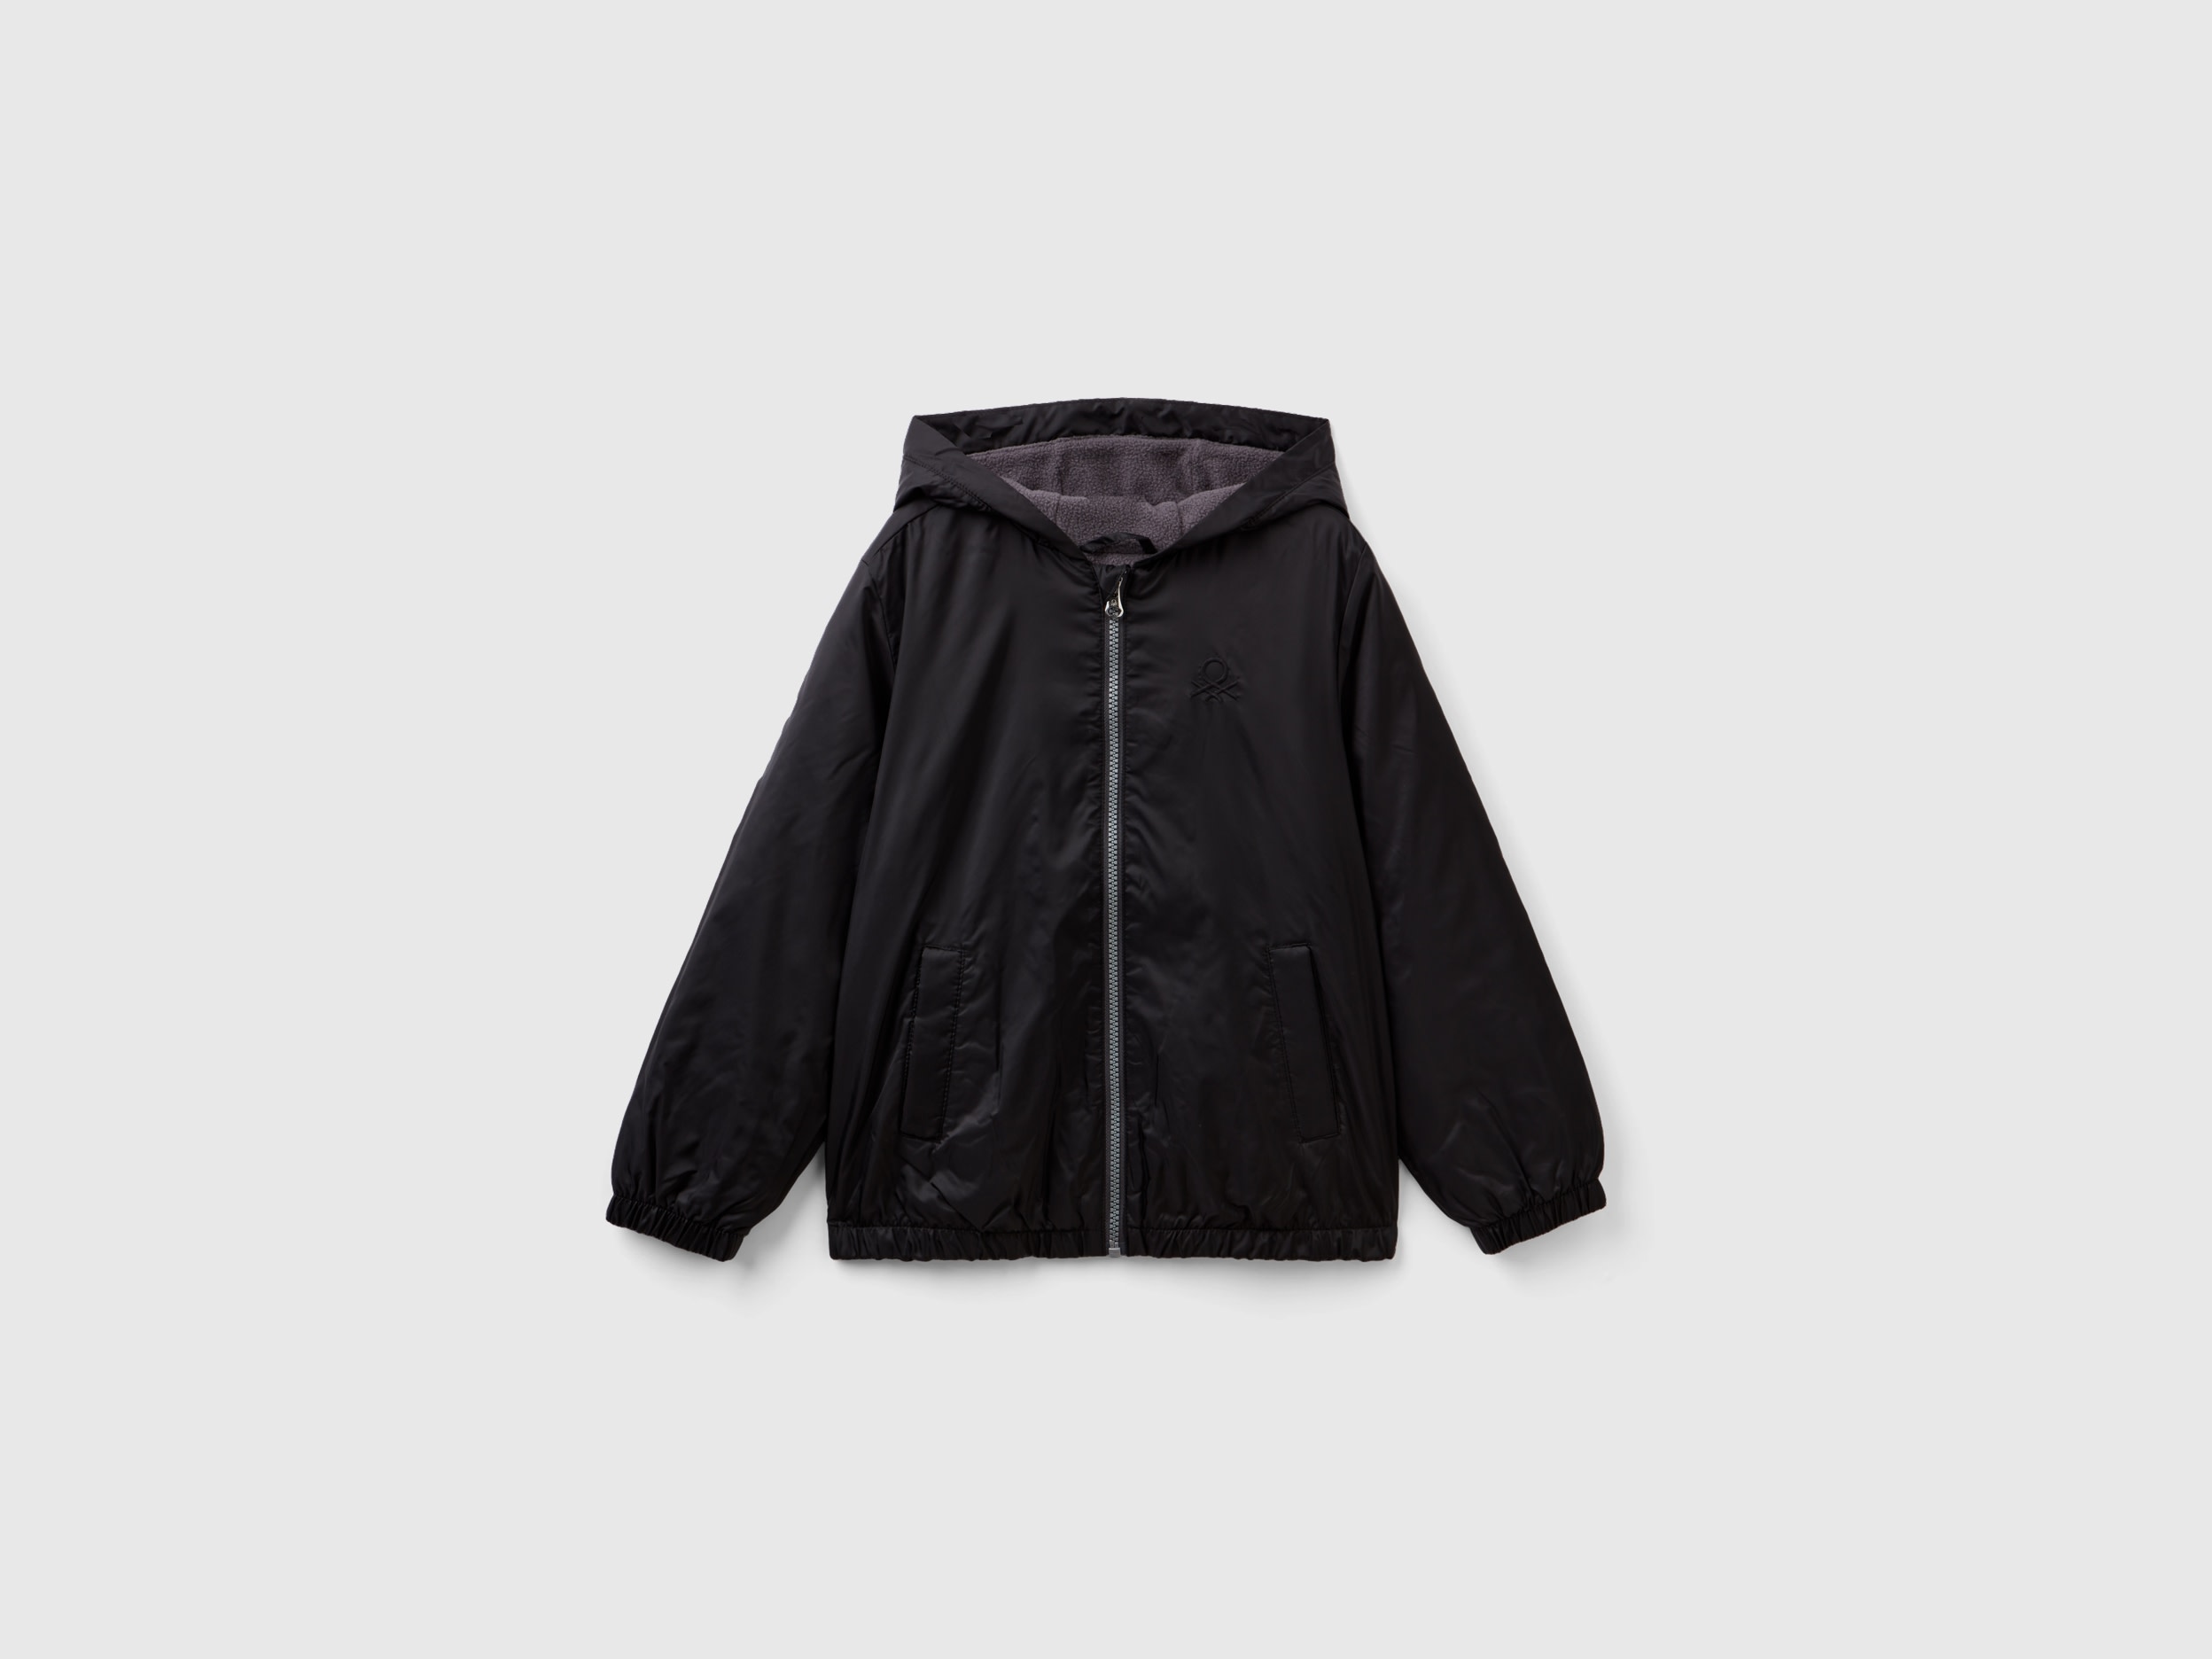 Benetton, Nylon Jacket With Zip And Hood, size 3XL, Black, Kids